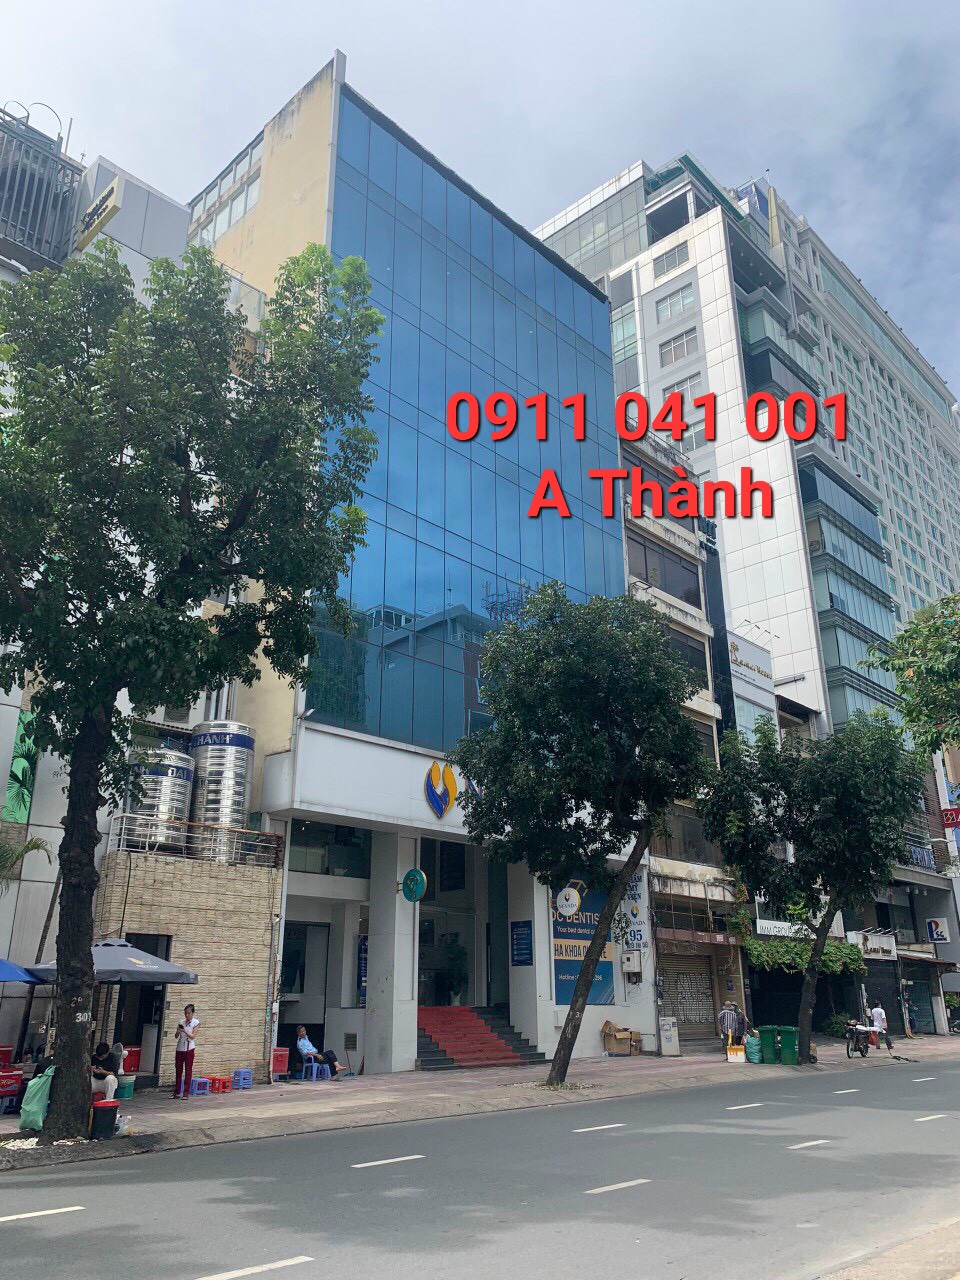 Bán gấp nhà mặt tiền chính chủ Đường Nguyễn Đình Chiểu Q3, dt 14x10m, nhà 1 hầm 9 tầng, 105 tỷ TL